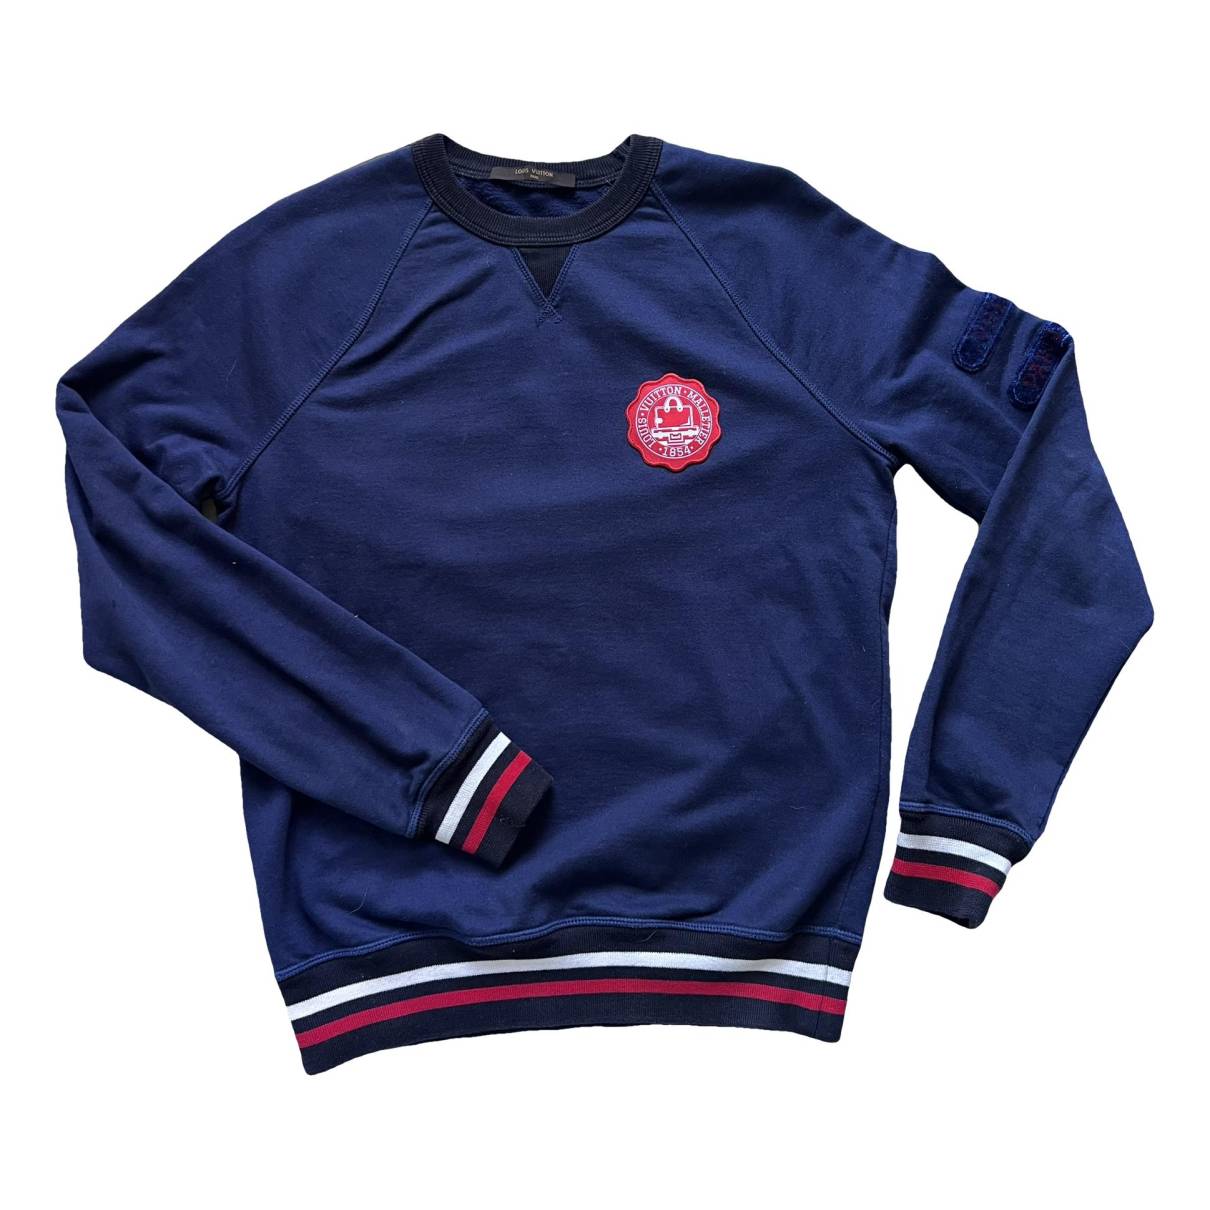 Sweatshirt Louis Vuitton Navy size S International in Cotton - 35663163